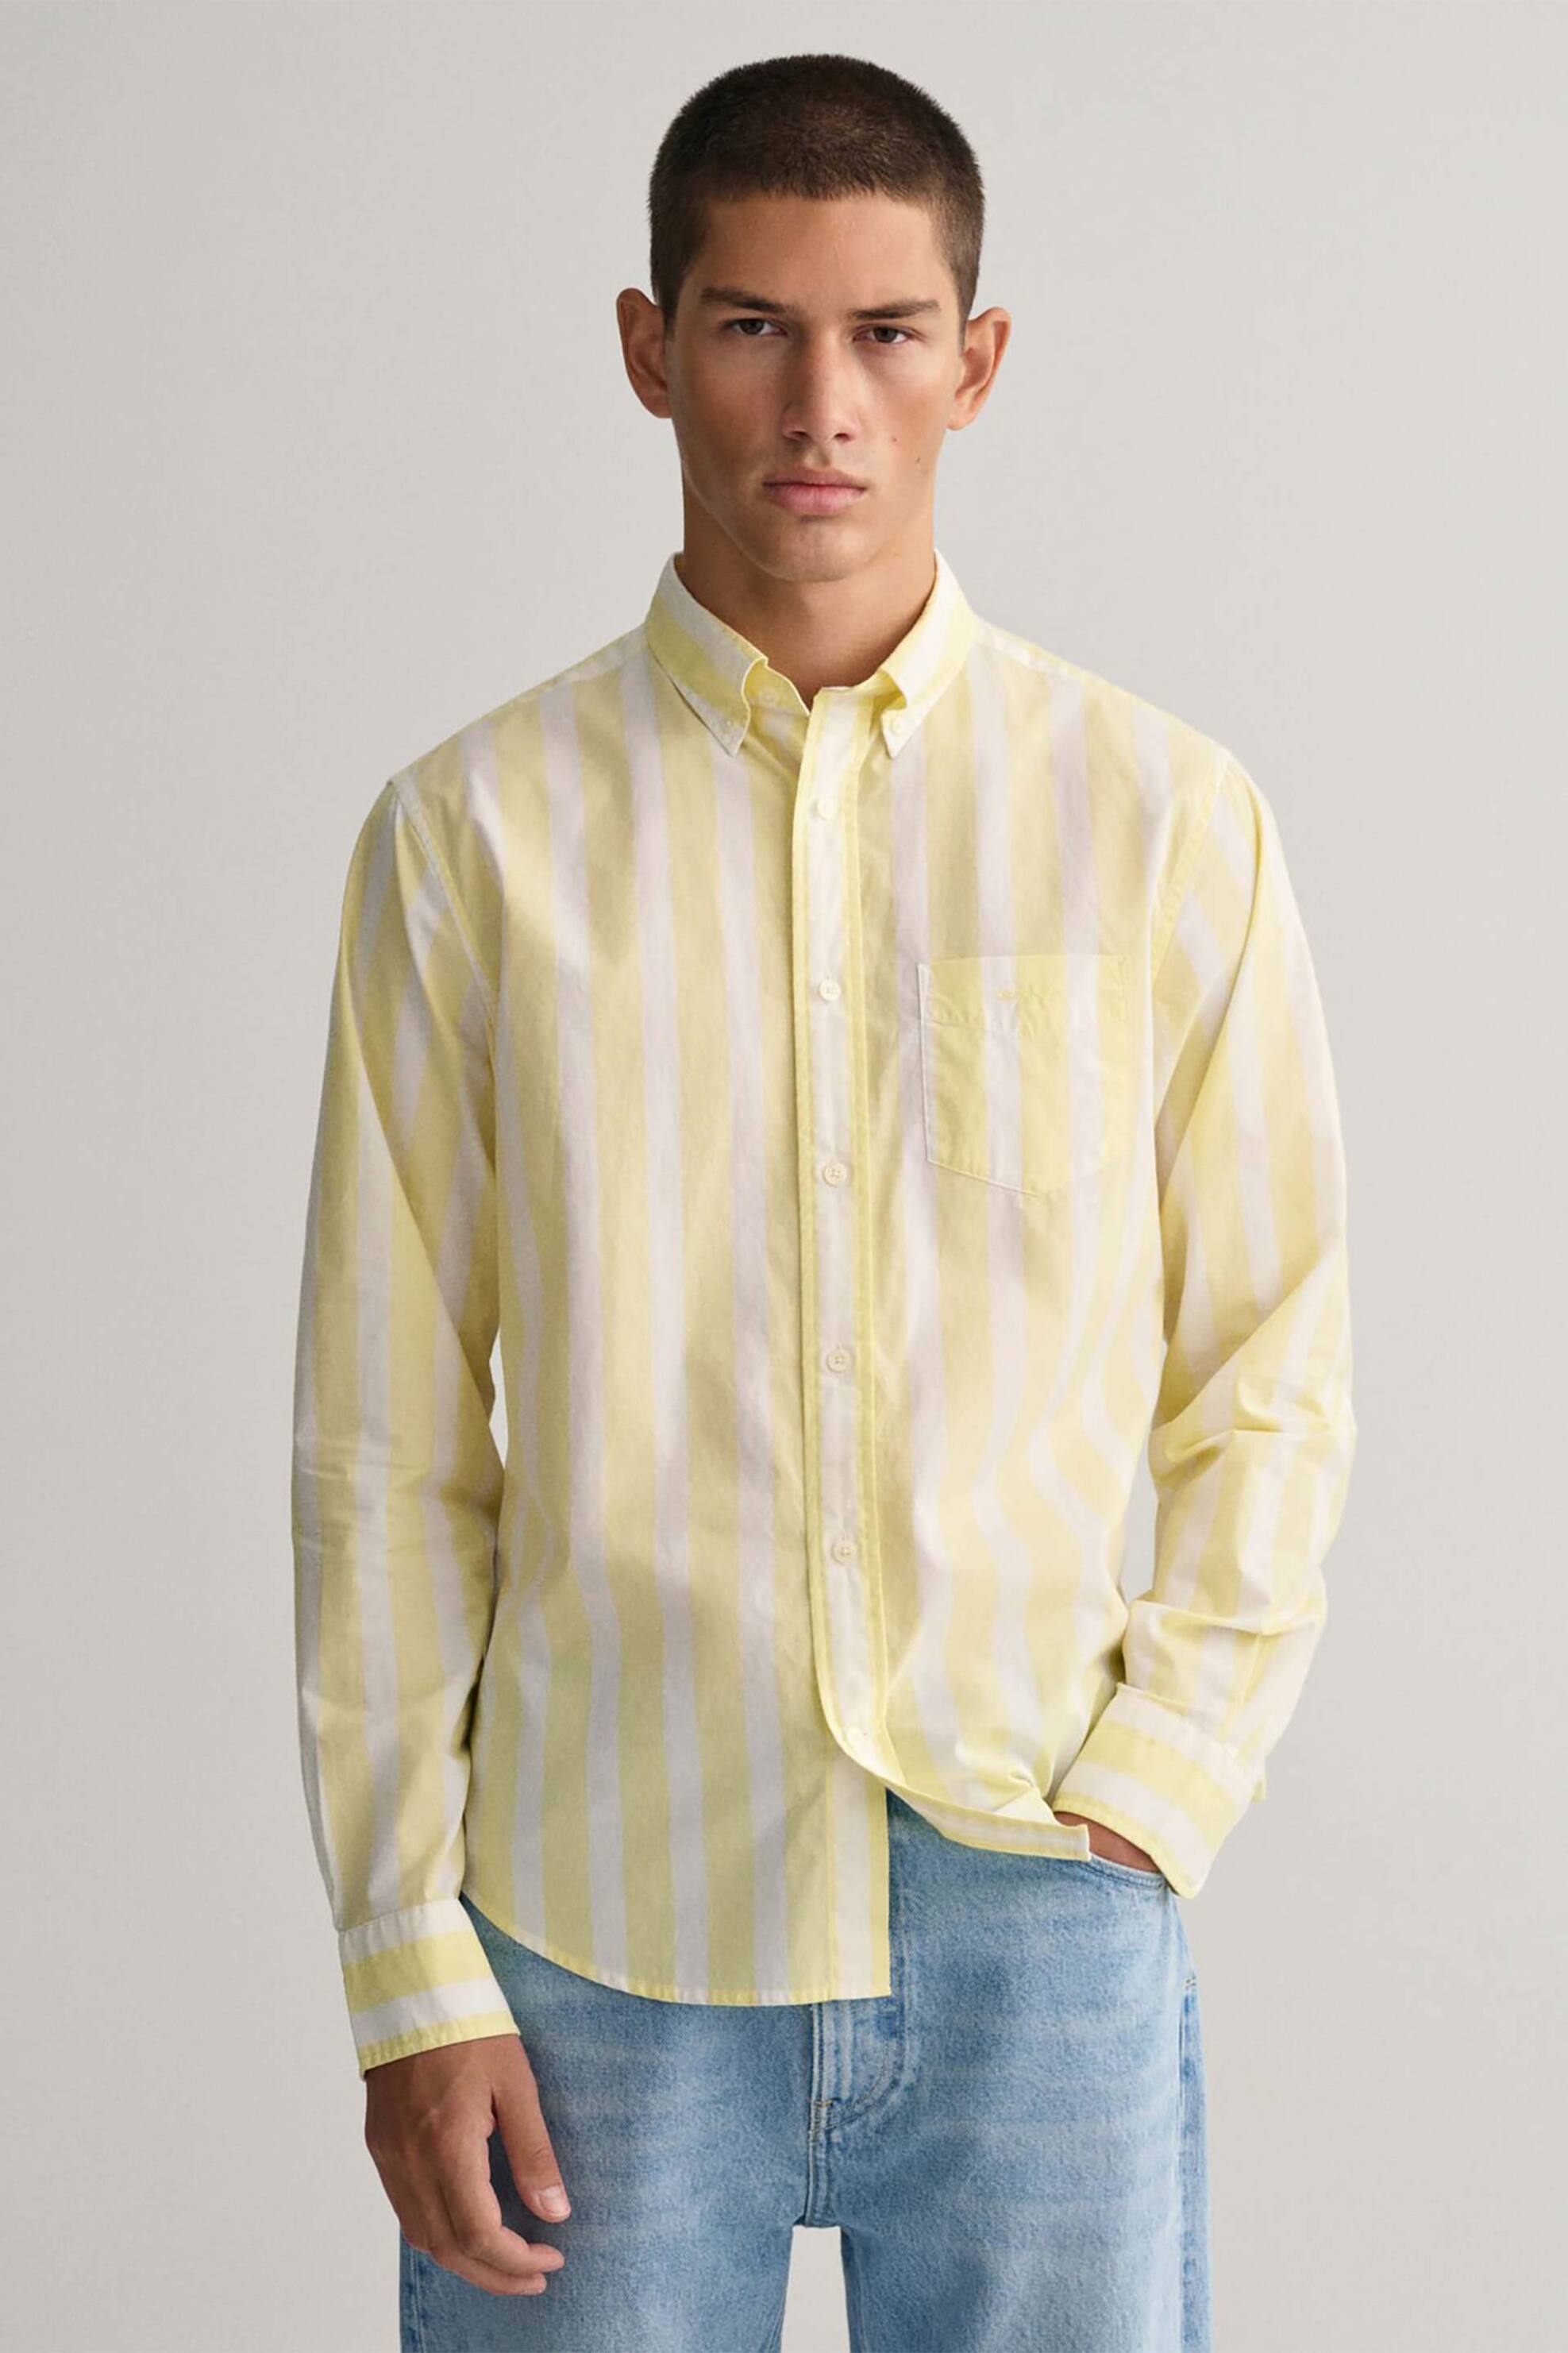 Ανδρική Μόδα > Ανδρικά Ρούχα > Ανδρικά Πουκάμισα > Ανδρικά Πουκάμισα Casual Gant ανδρικό πουκάμισο button-down με ριγέ print Regular Fit - 3230112 Κίτρινο